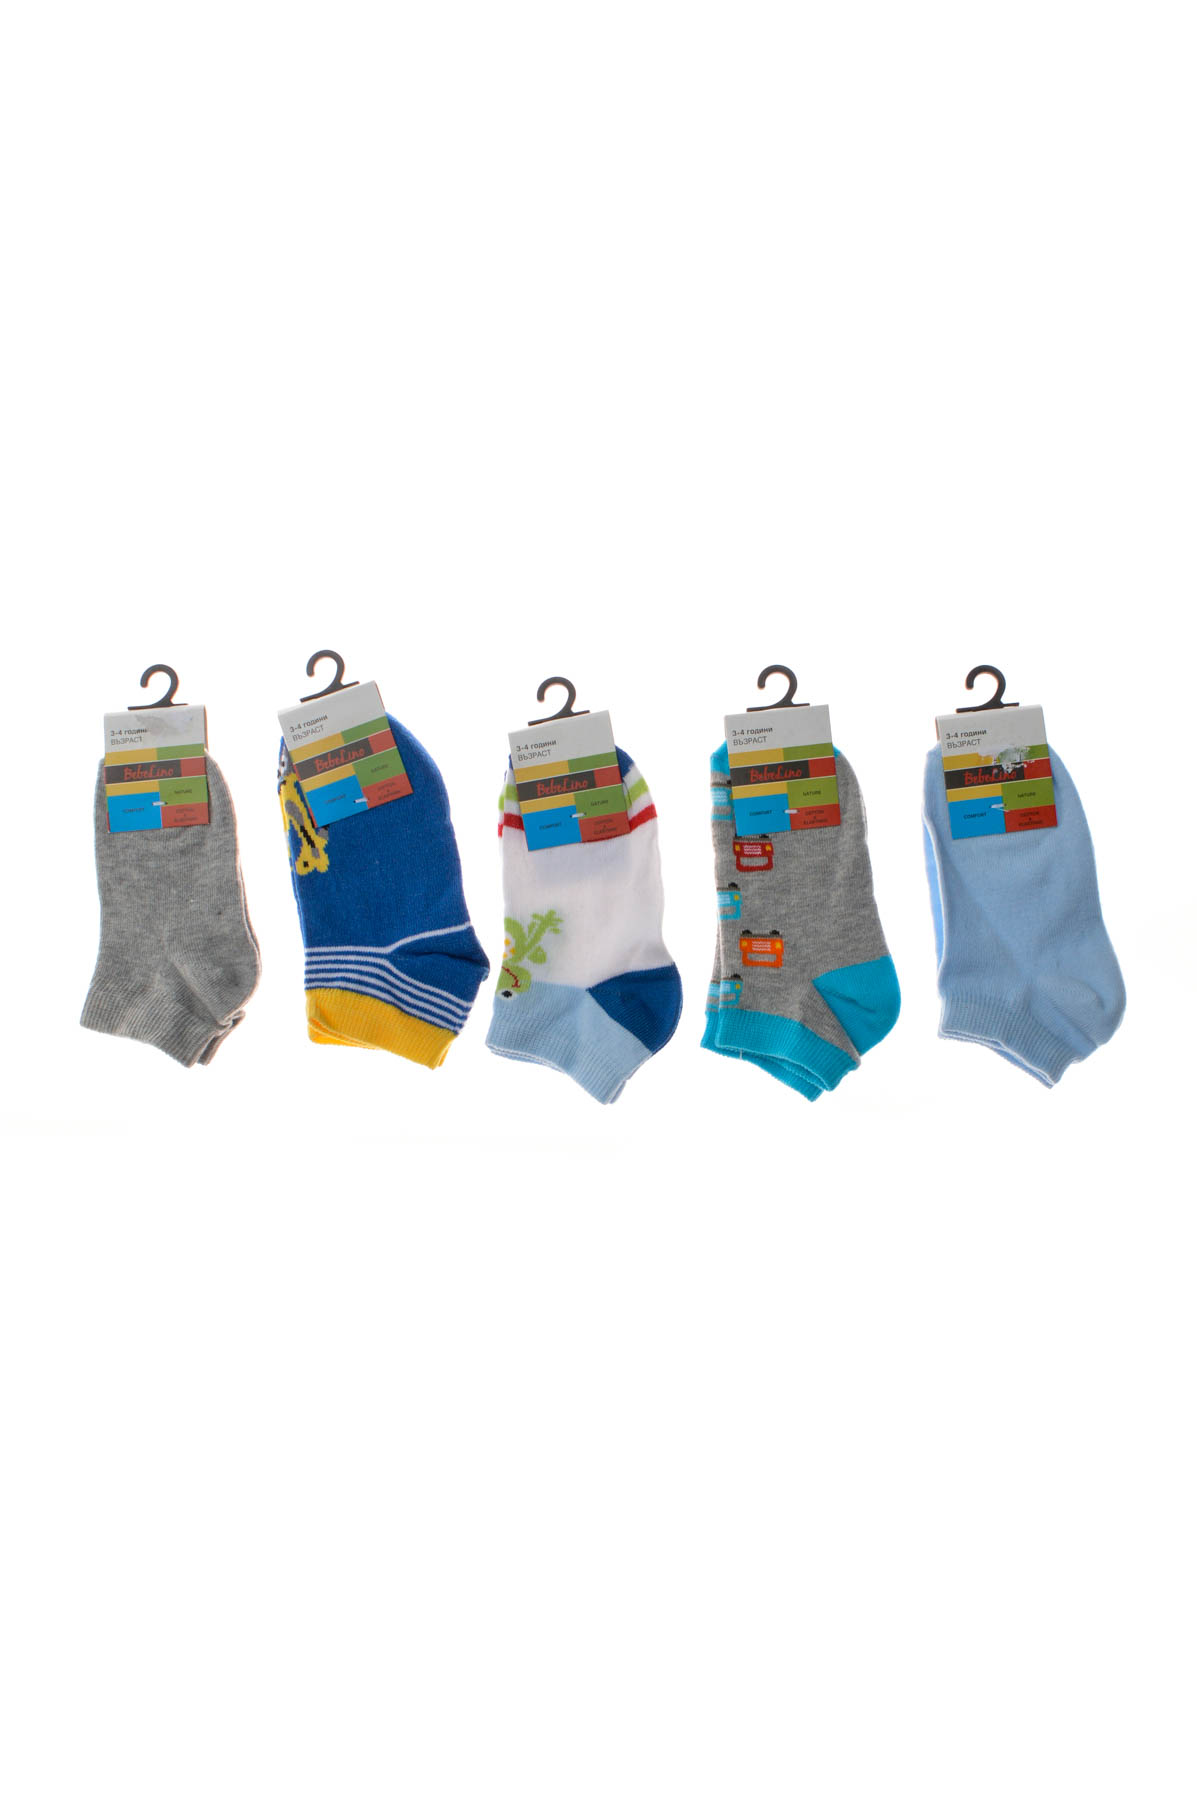 Kids' Socks 5pcs. - BebeLino - 0